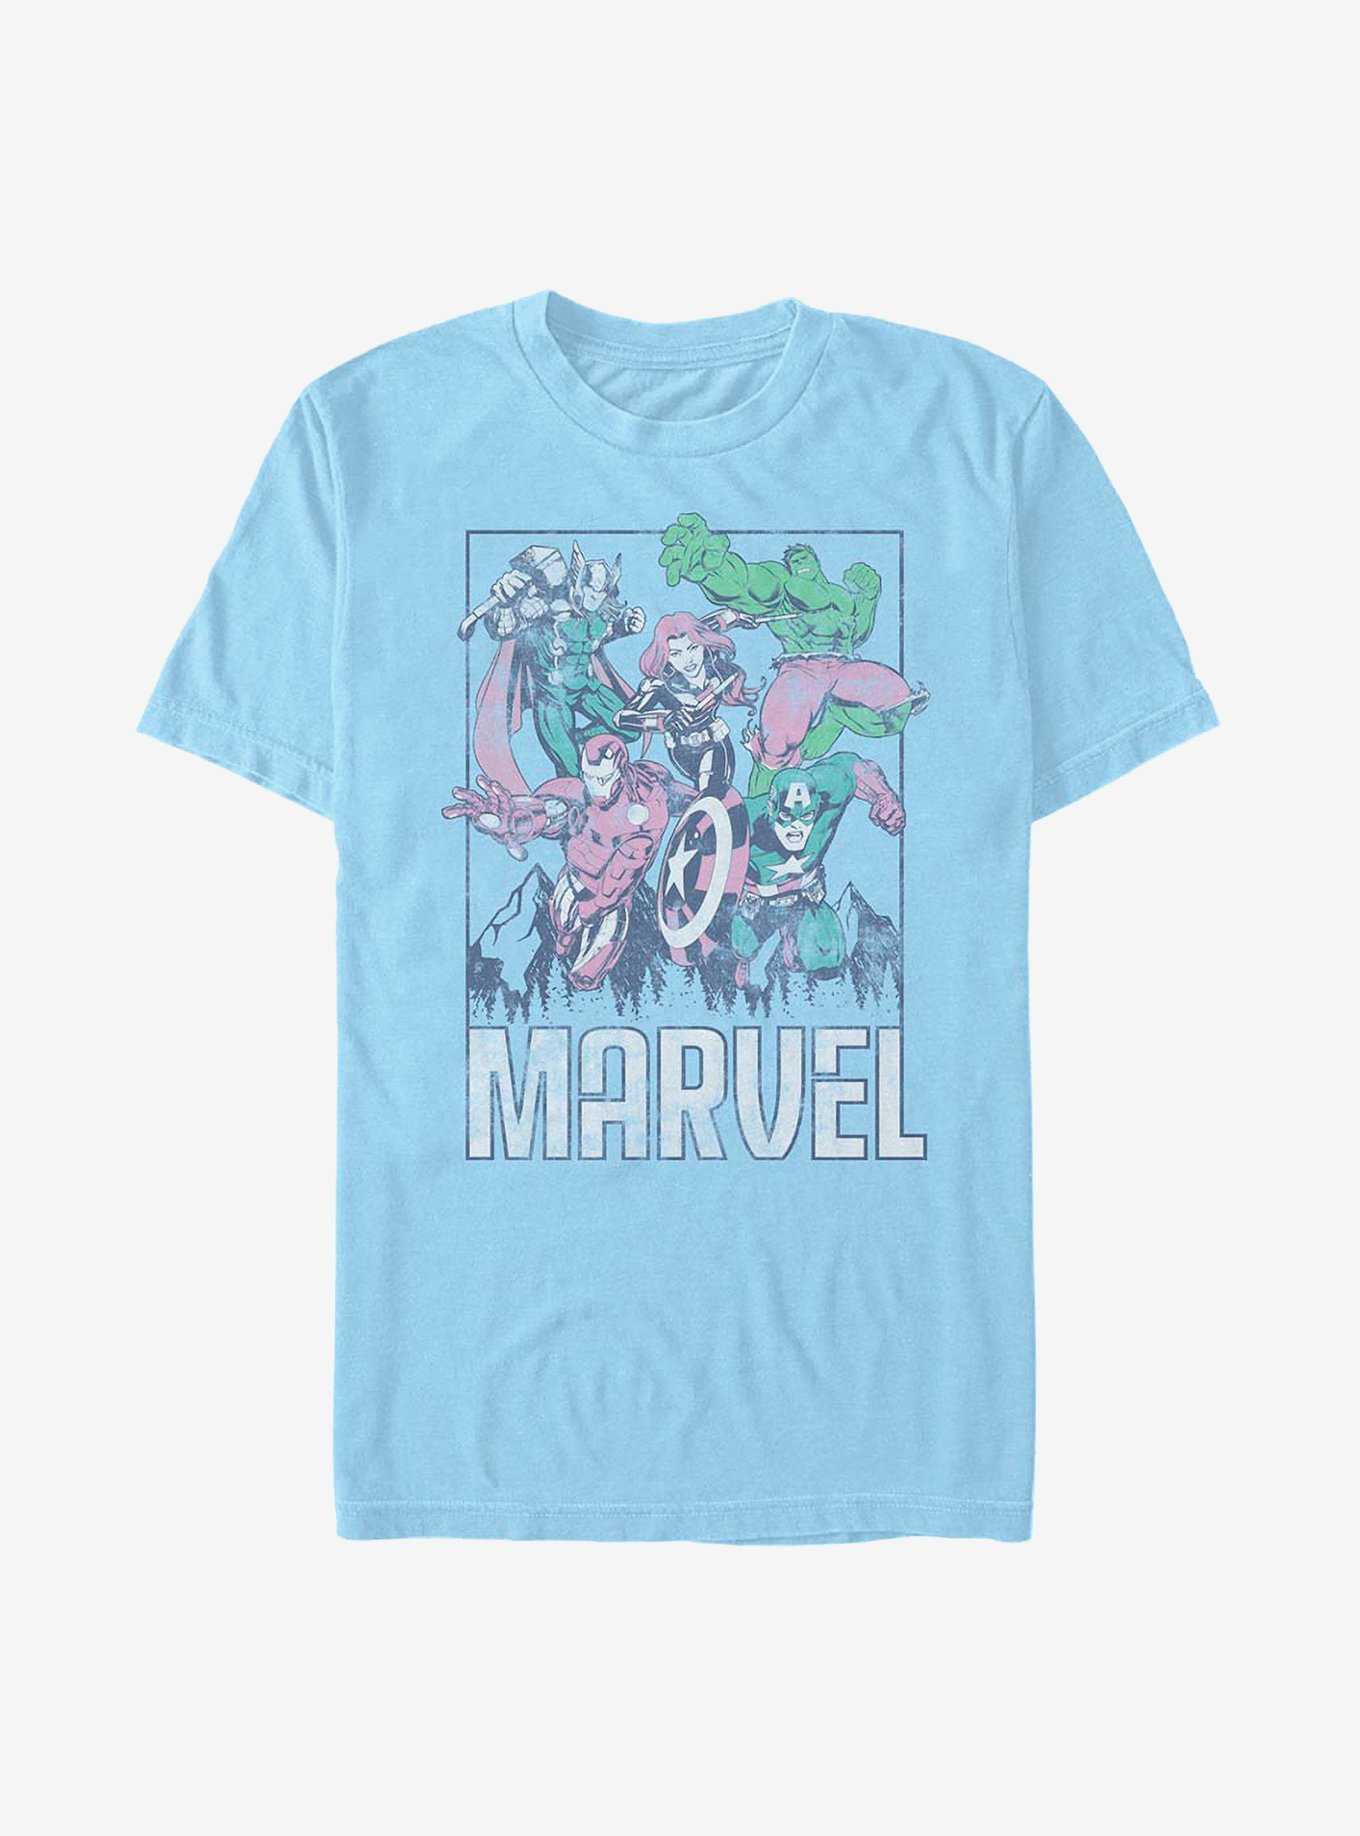 Marvel Avengers Marvel Avengers Group T-Shirt, , hi-res